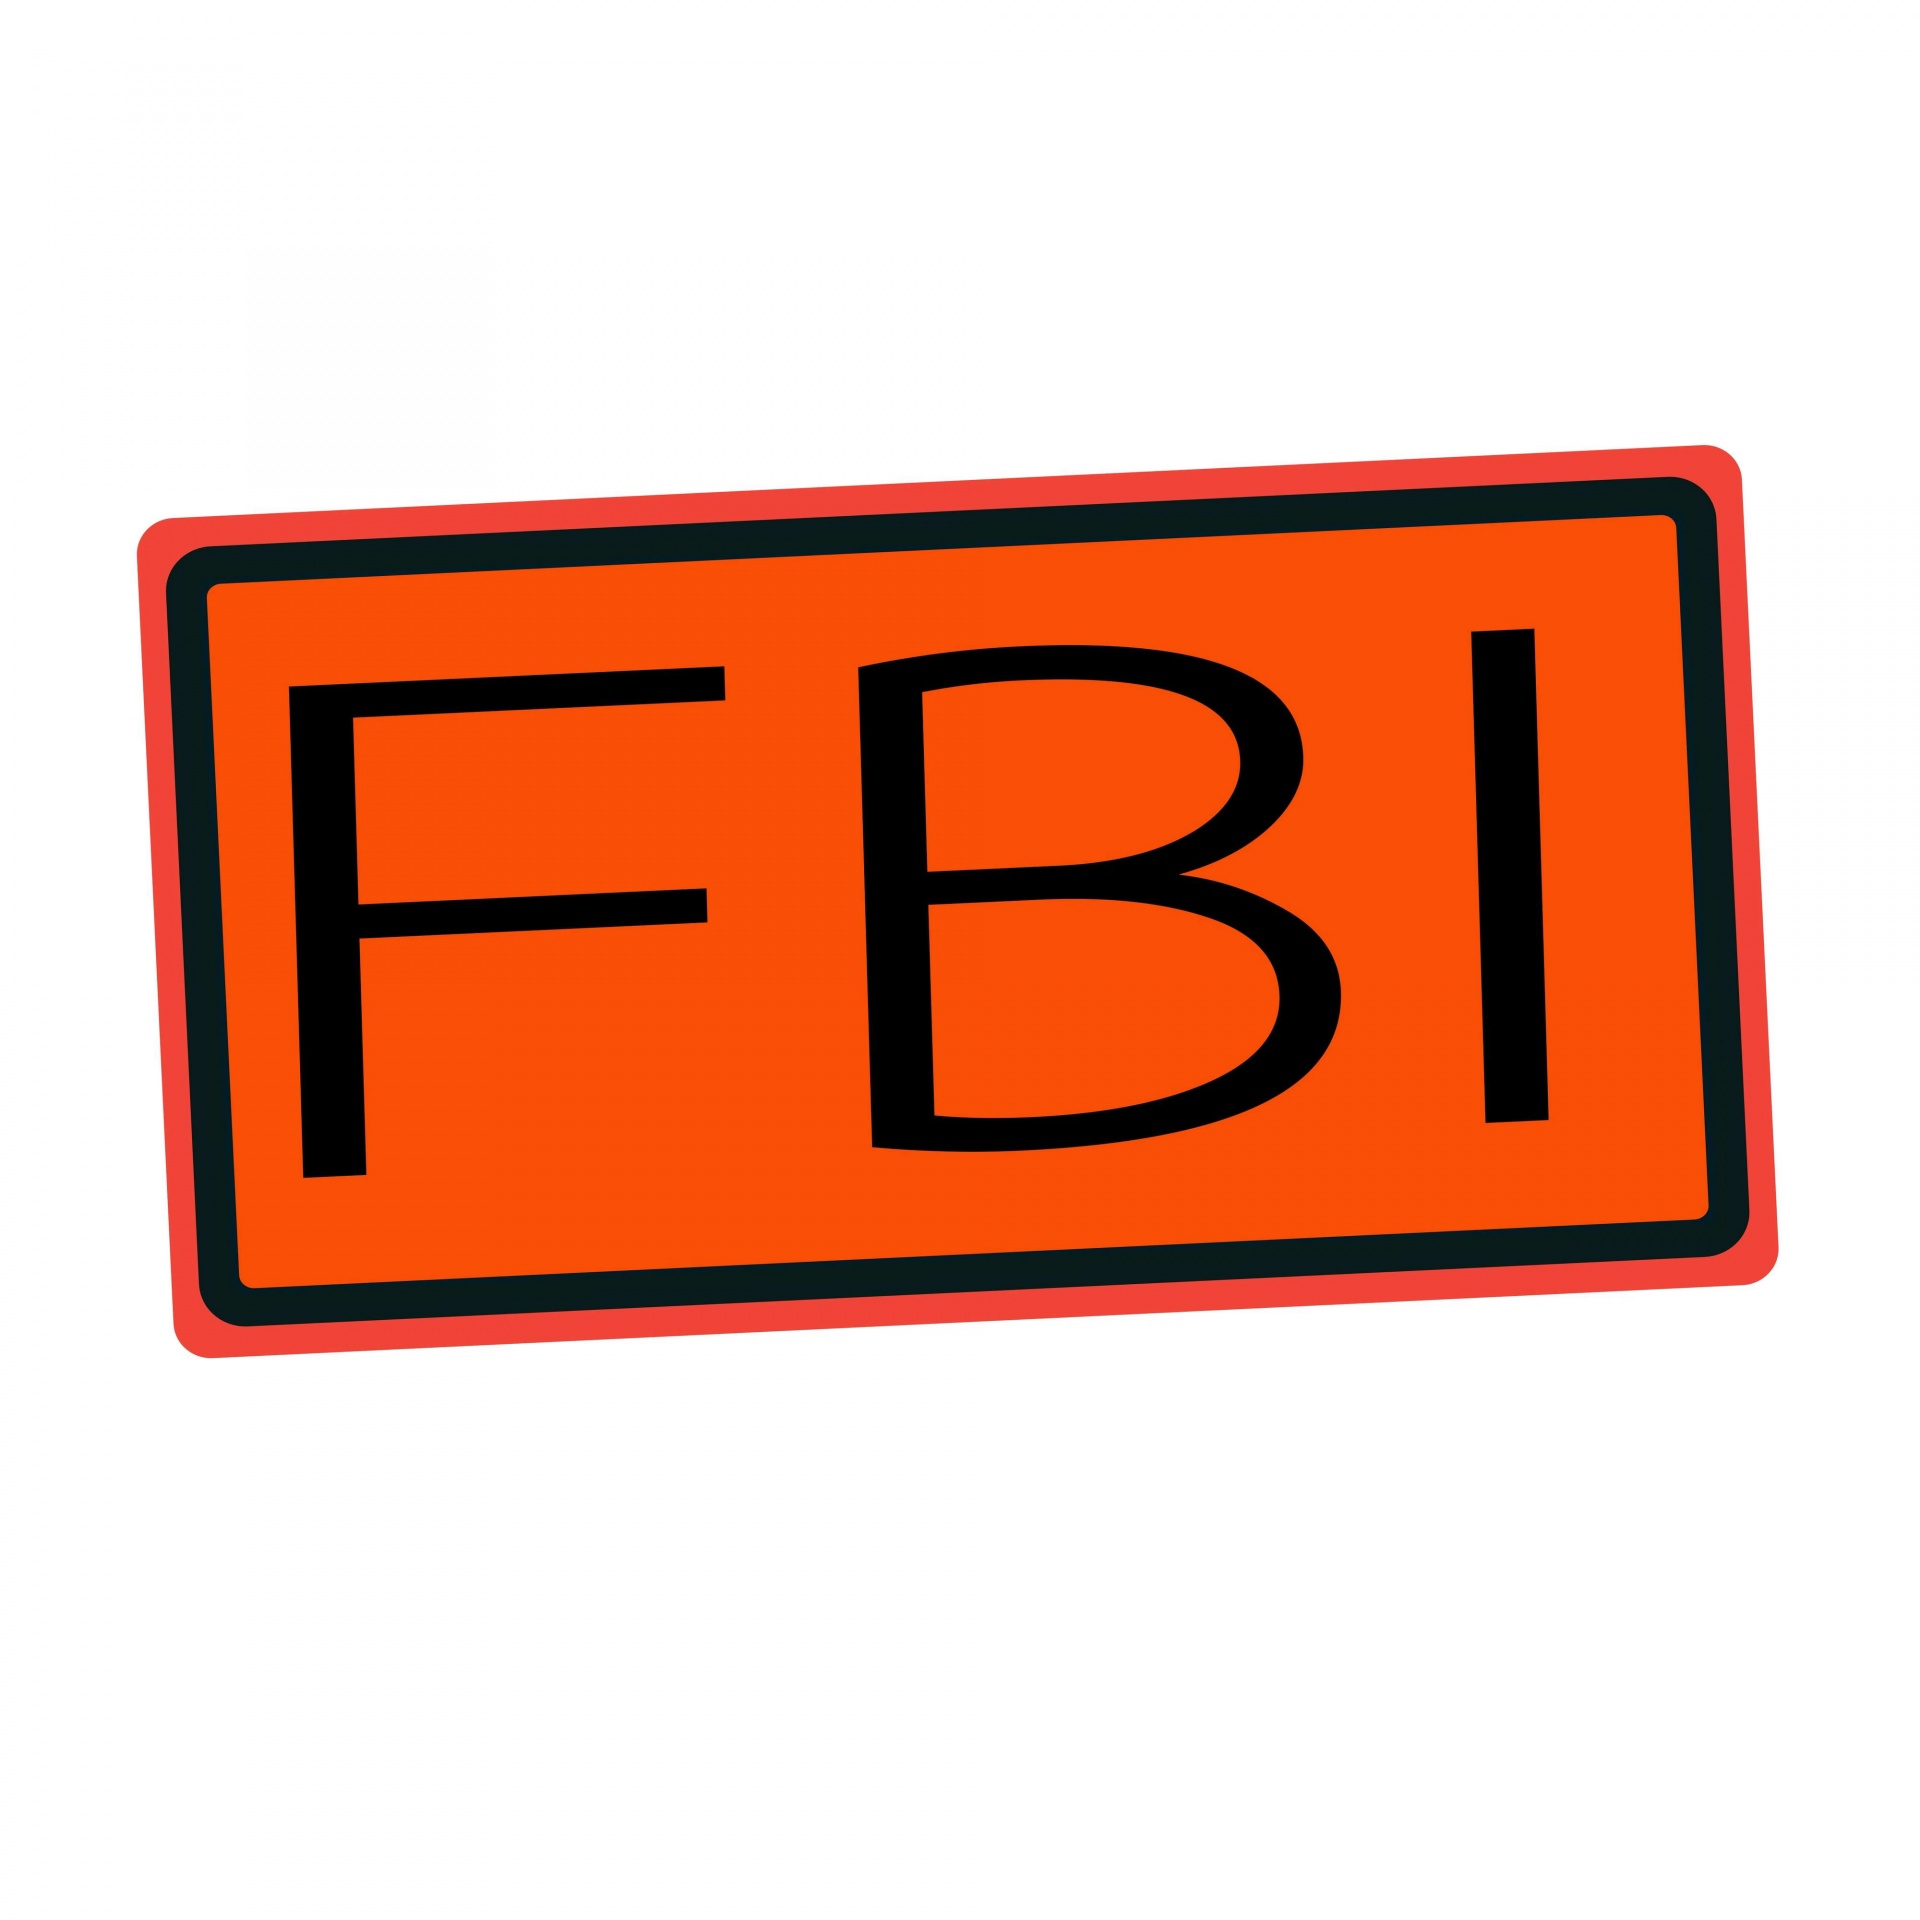 Texto del sello negro del FBI en naranja